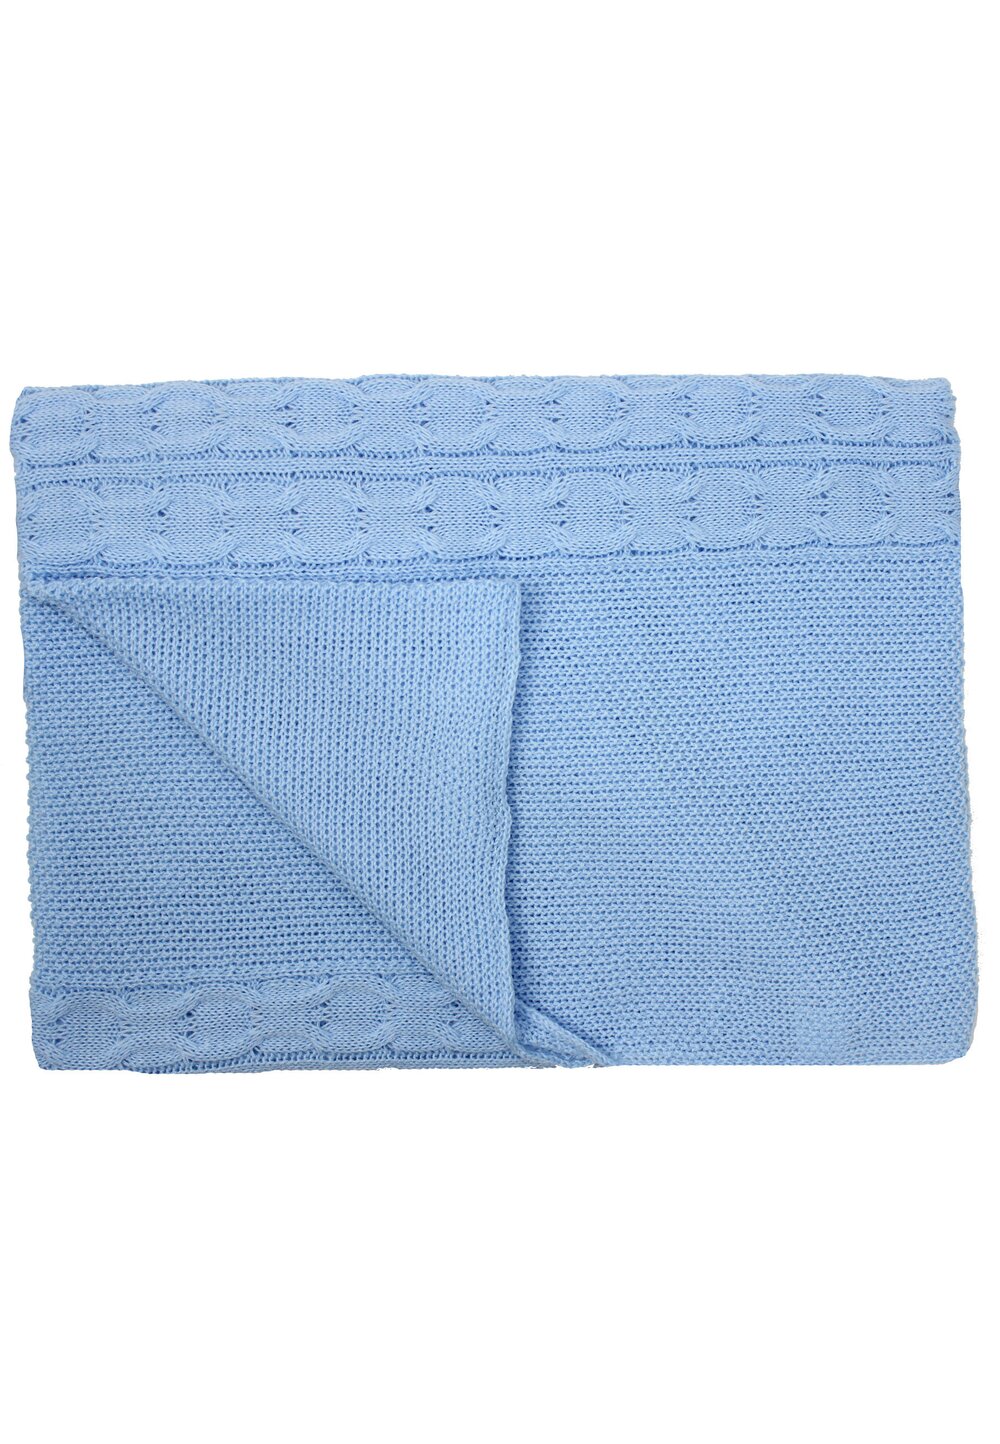 Paturica tricotata, Eva, albastra, 90x90cm Prichindel